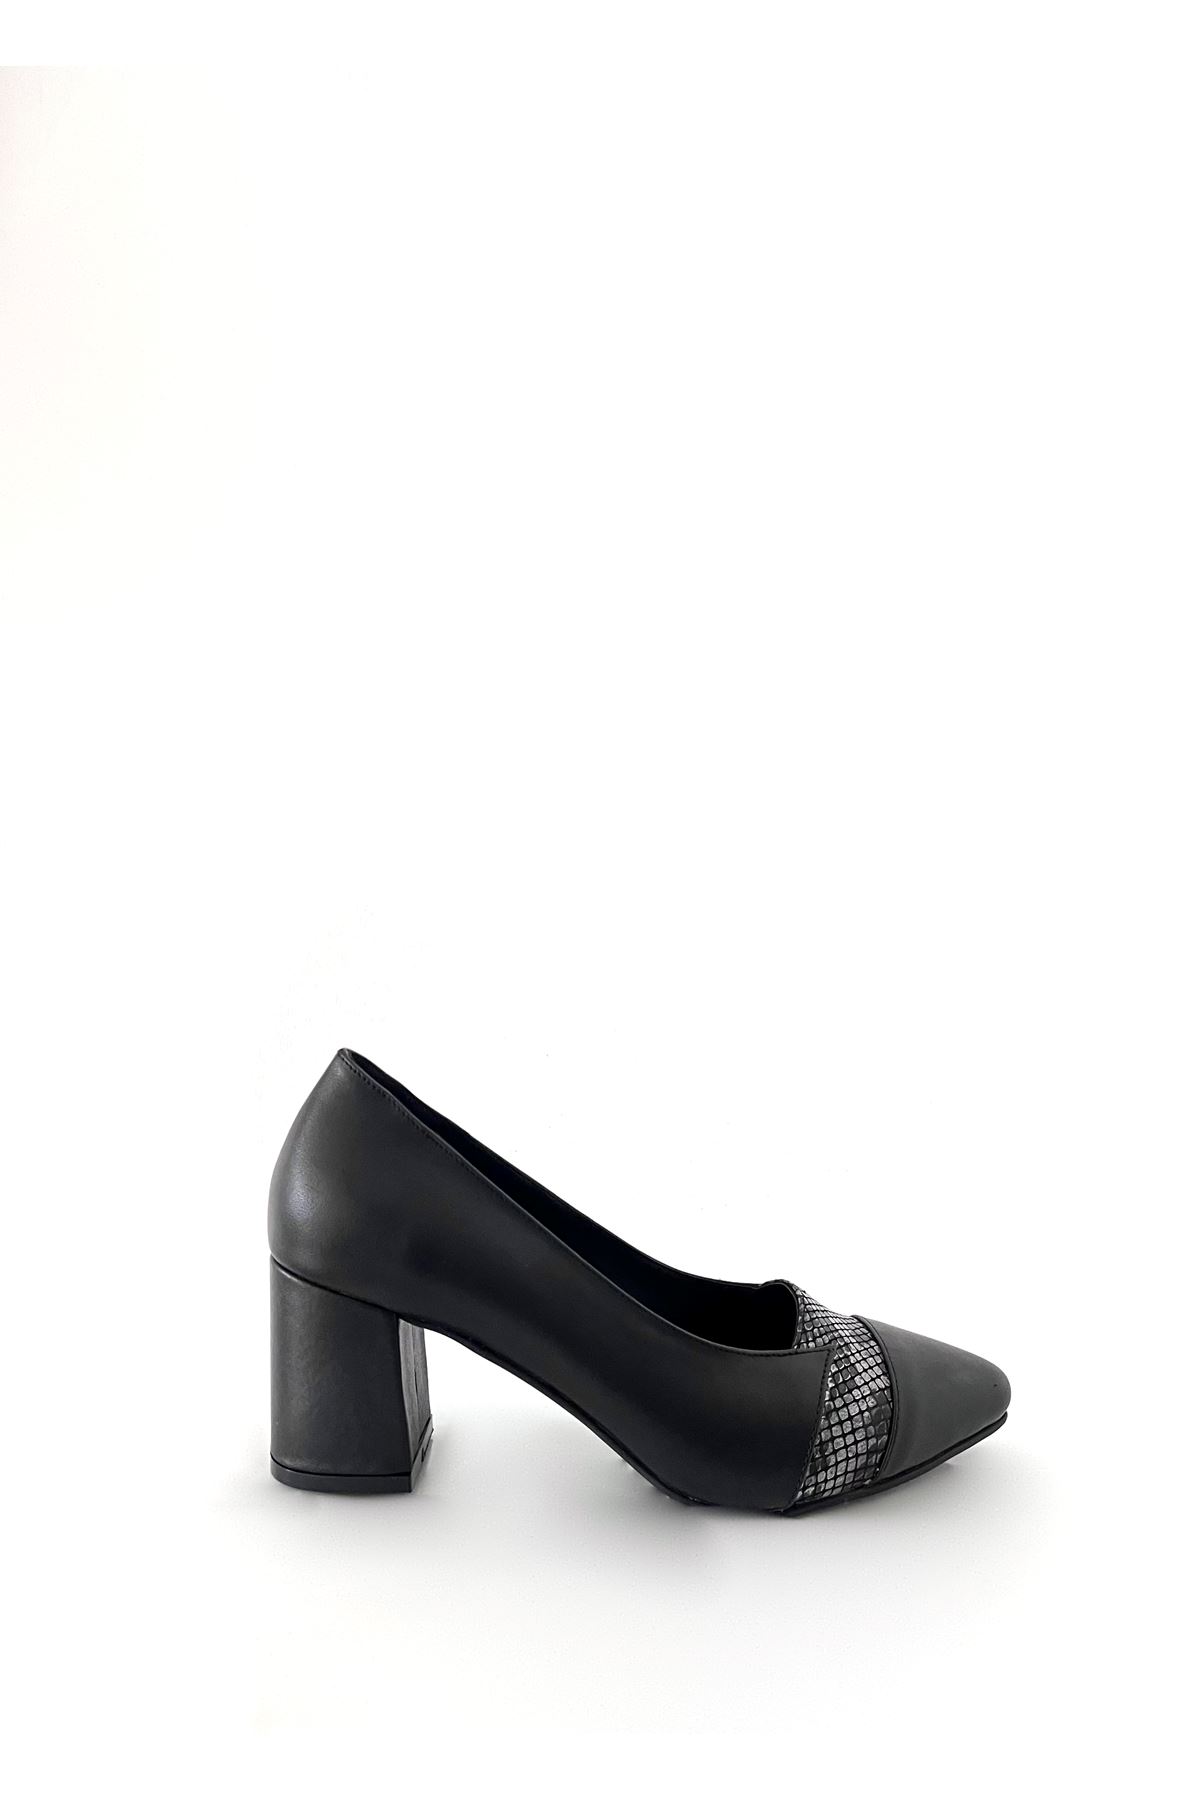 Gerçek Deri Kadın Topuklu Ayakkabı Siyah  Bonita